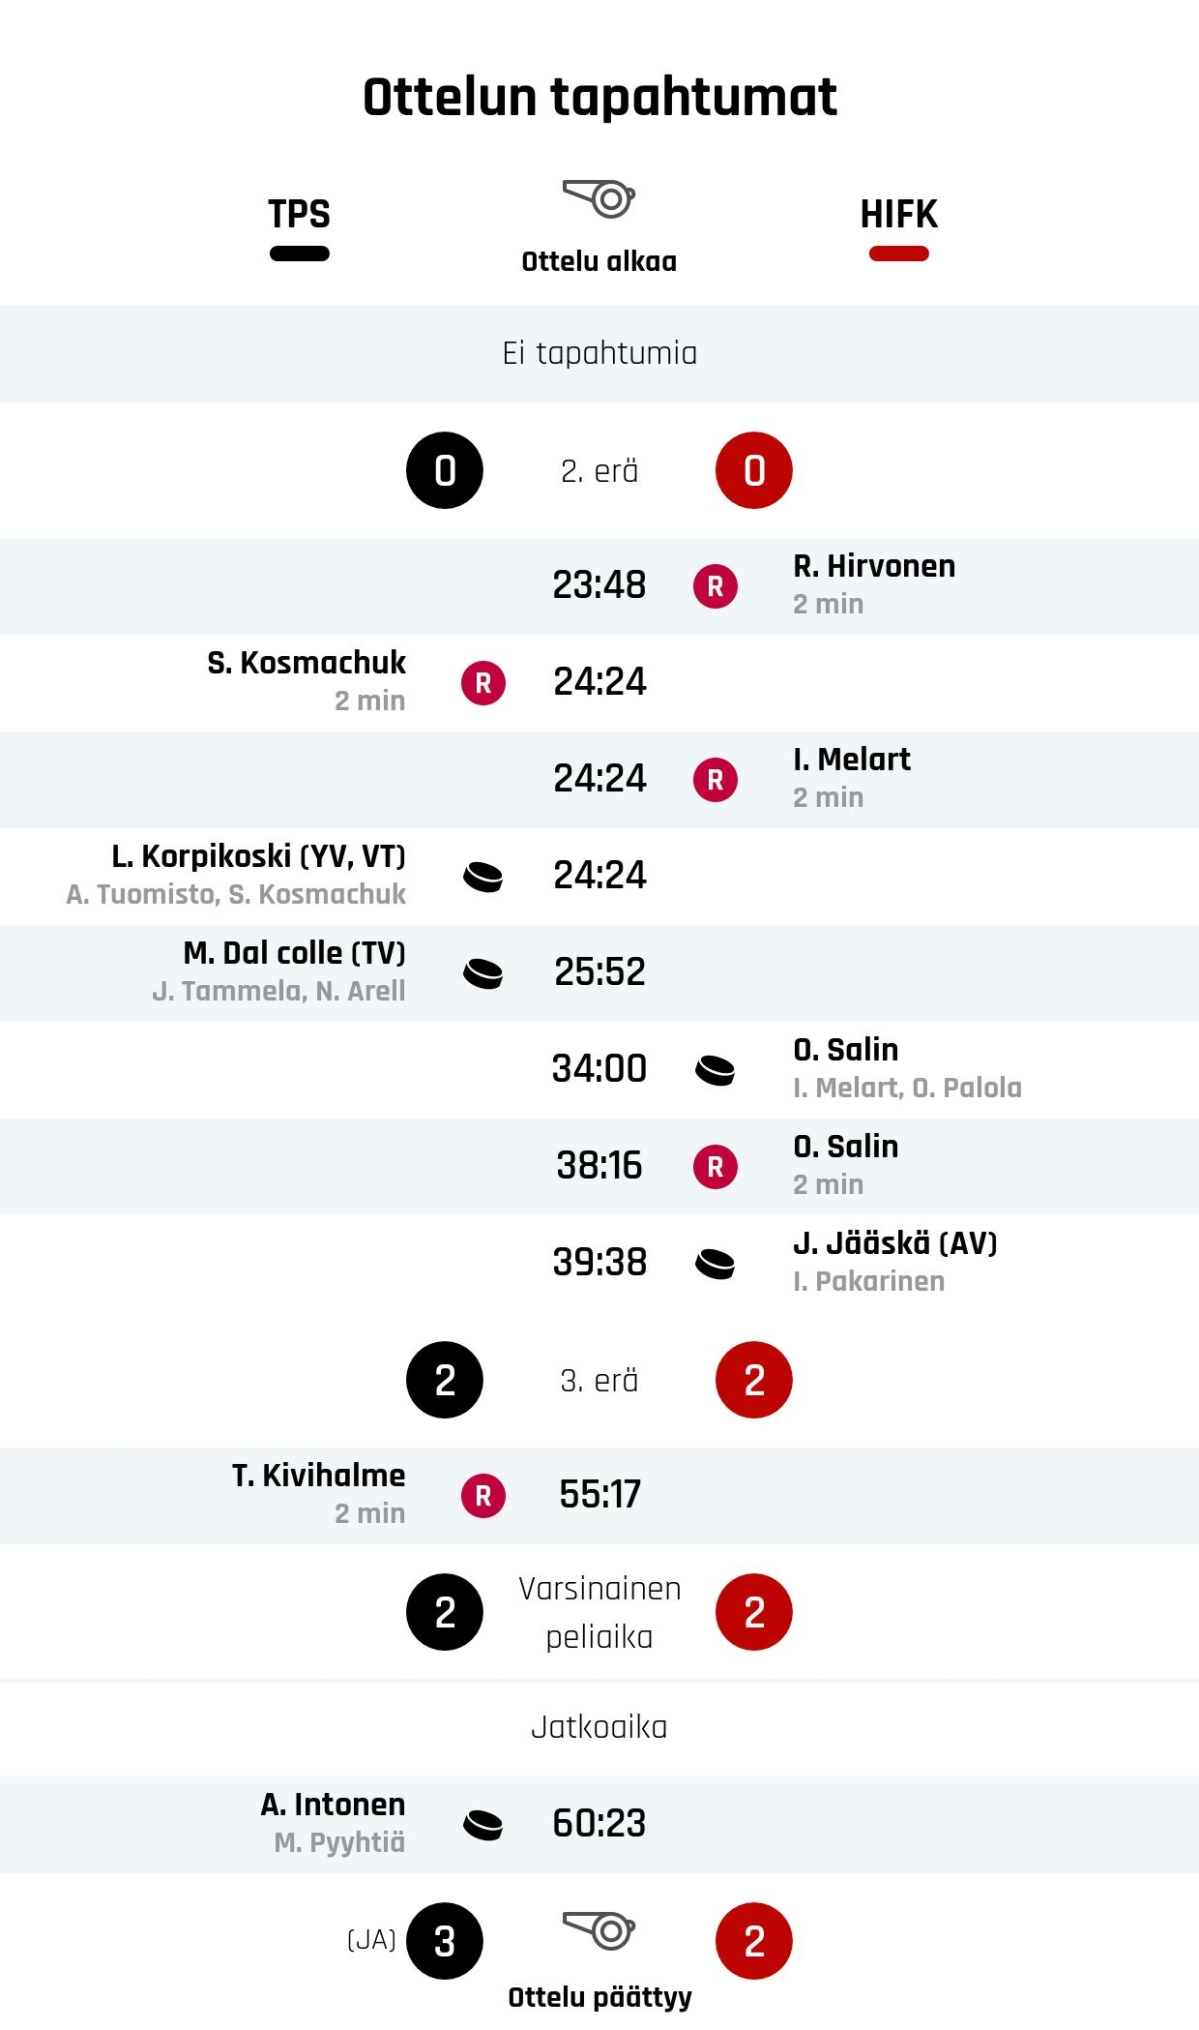 TPS voitti jännitysnäytelmän – HIFK kaatui jatkoajalla